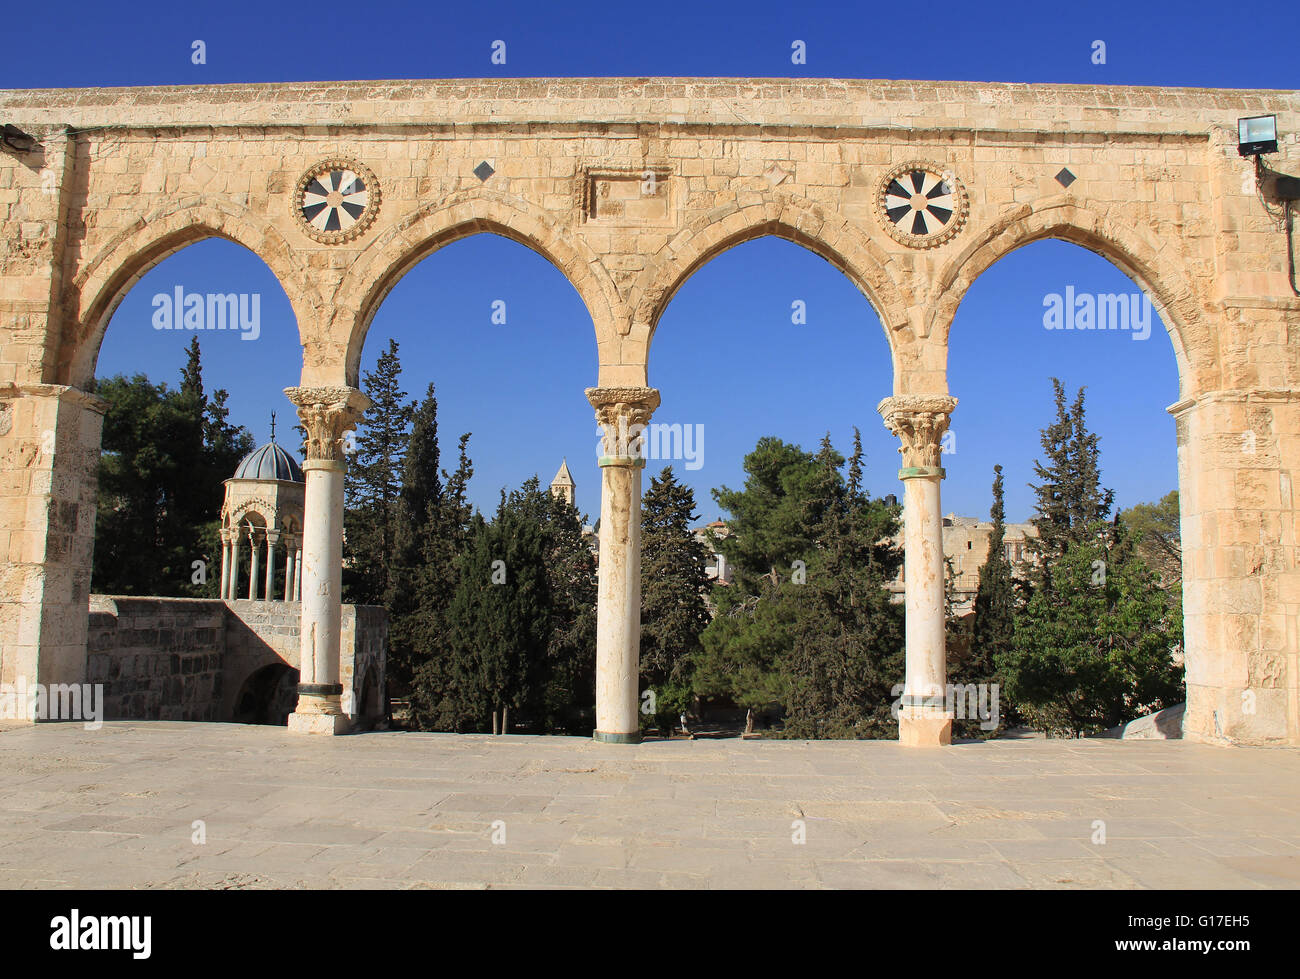 Colonnade arqueada por la plaza en el Monte del Templo en Jerusalén, Israel. Foto de stock